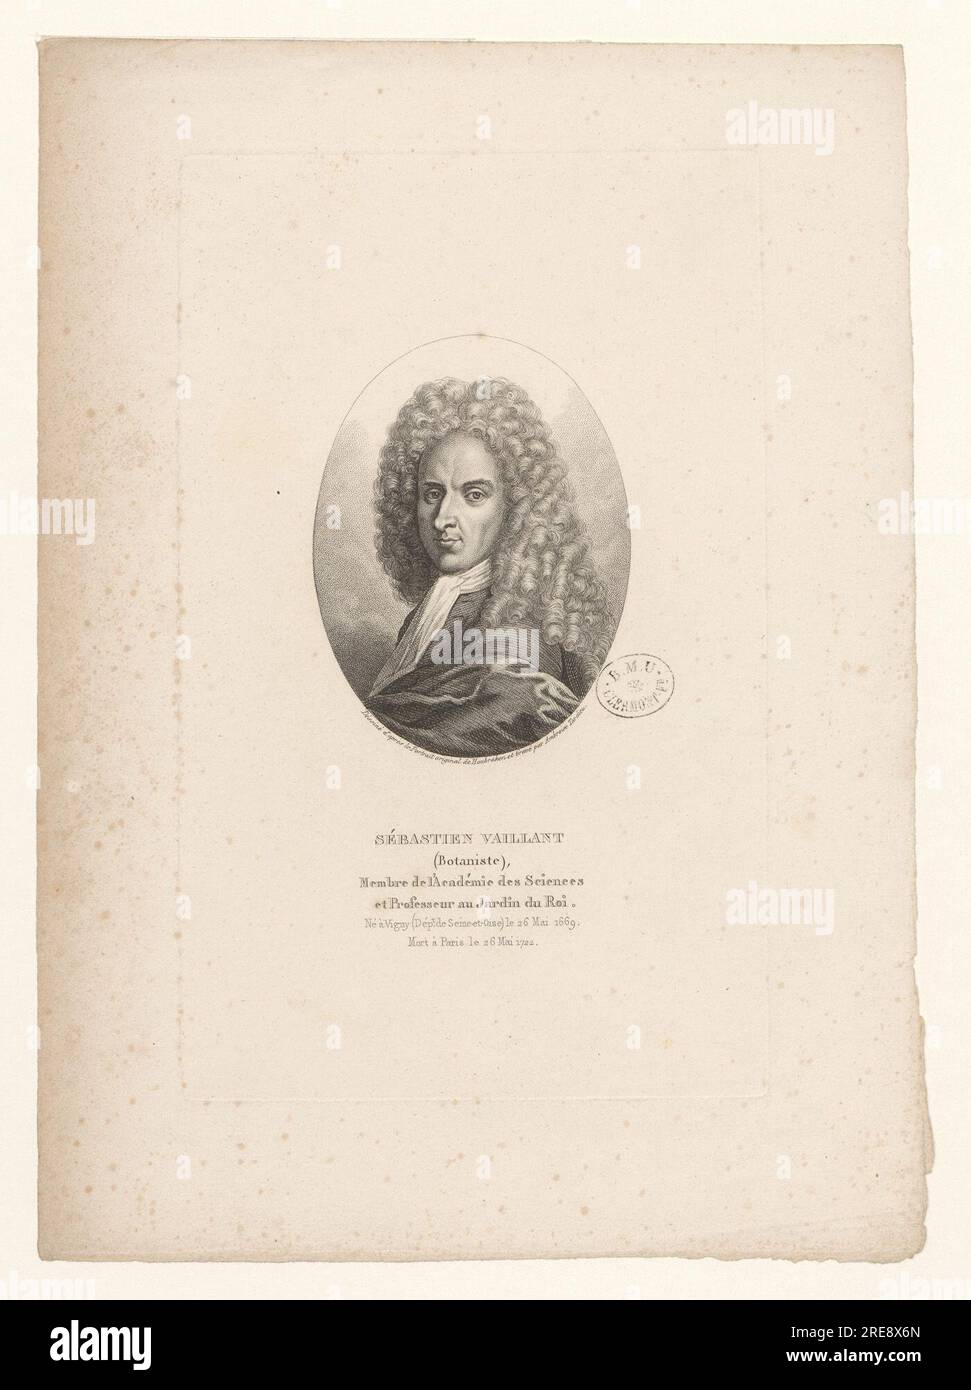 Sébastien Vaillant (Botaniste), Membre de l'Académie des Sciences et Professeur au Jardin du ROI. Né à Vigny (Dépt de seine-et-Oise) le 26 Mai 1669. Mort à Paris le 26 Mai 1722 BOYER 2462 von Jacobus Houbraken Stockfoto